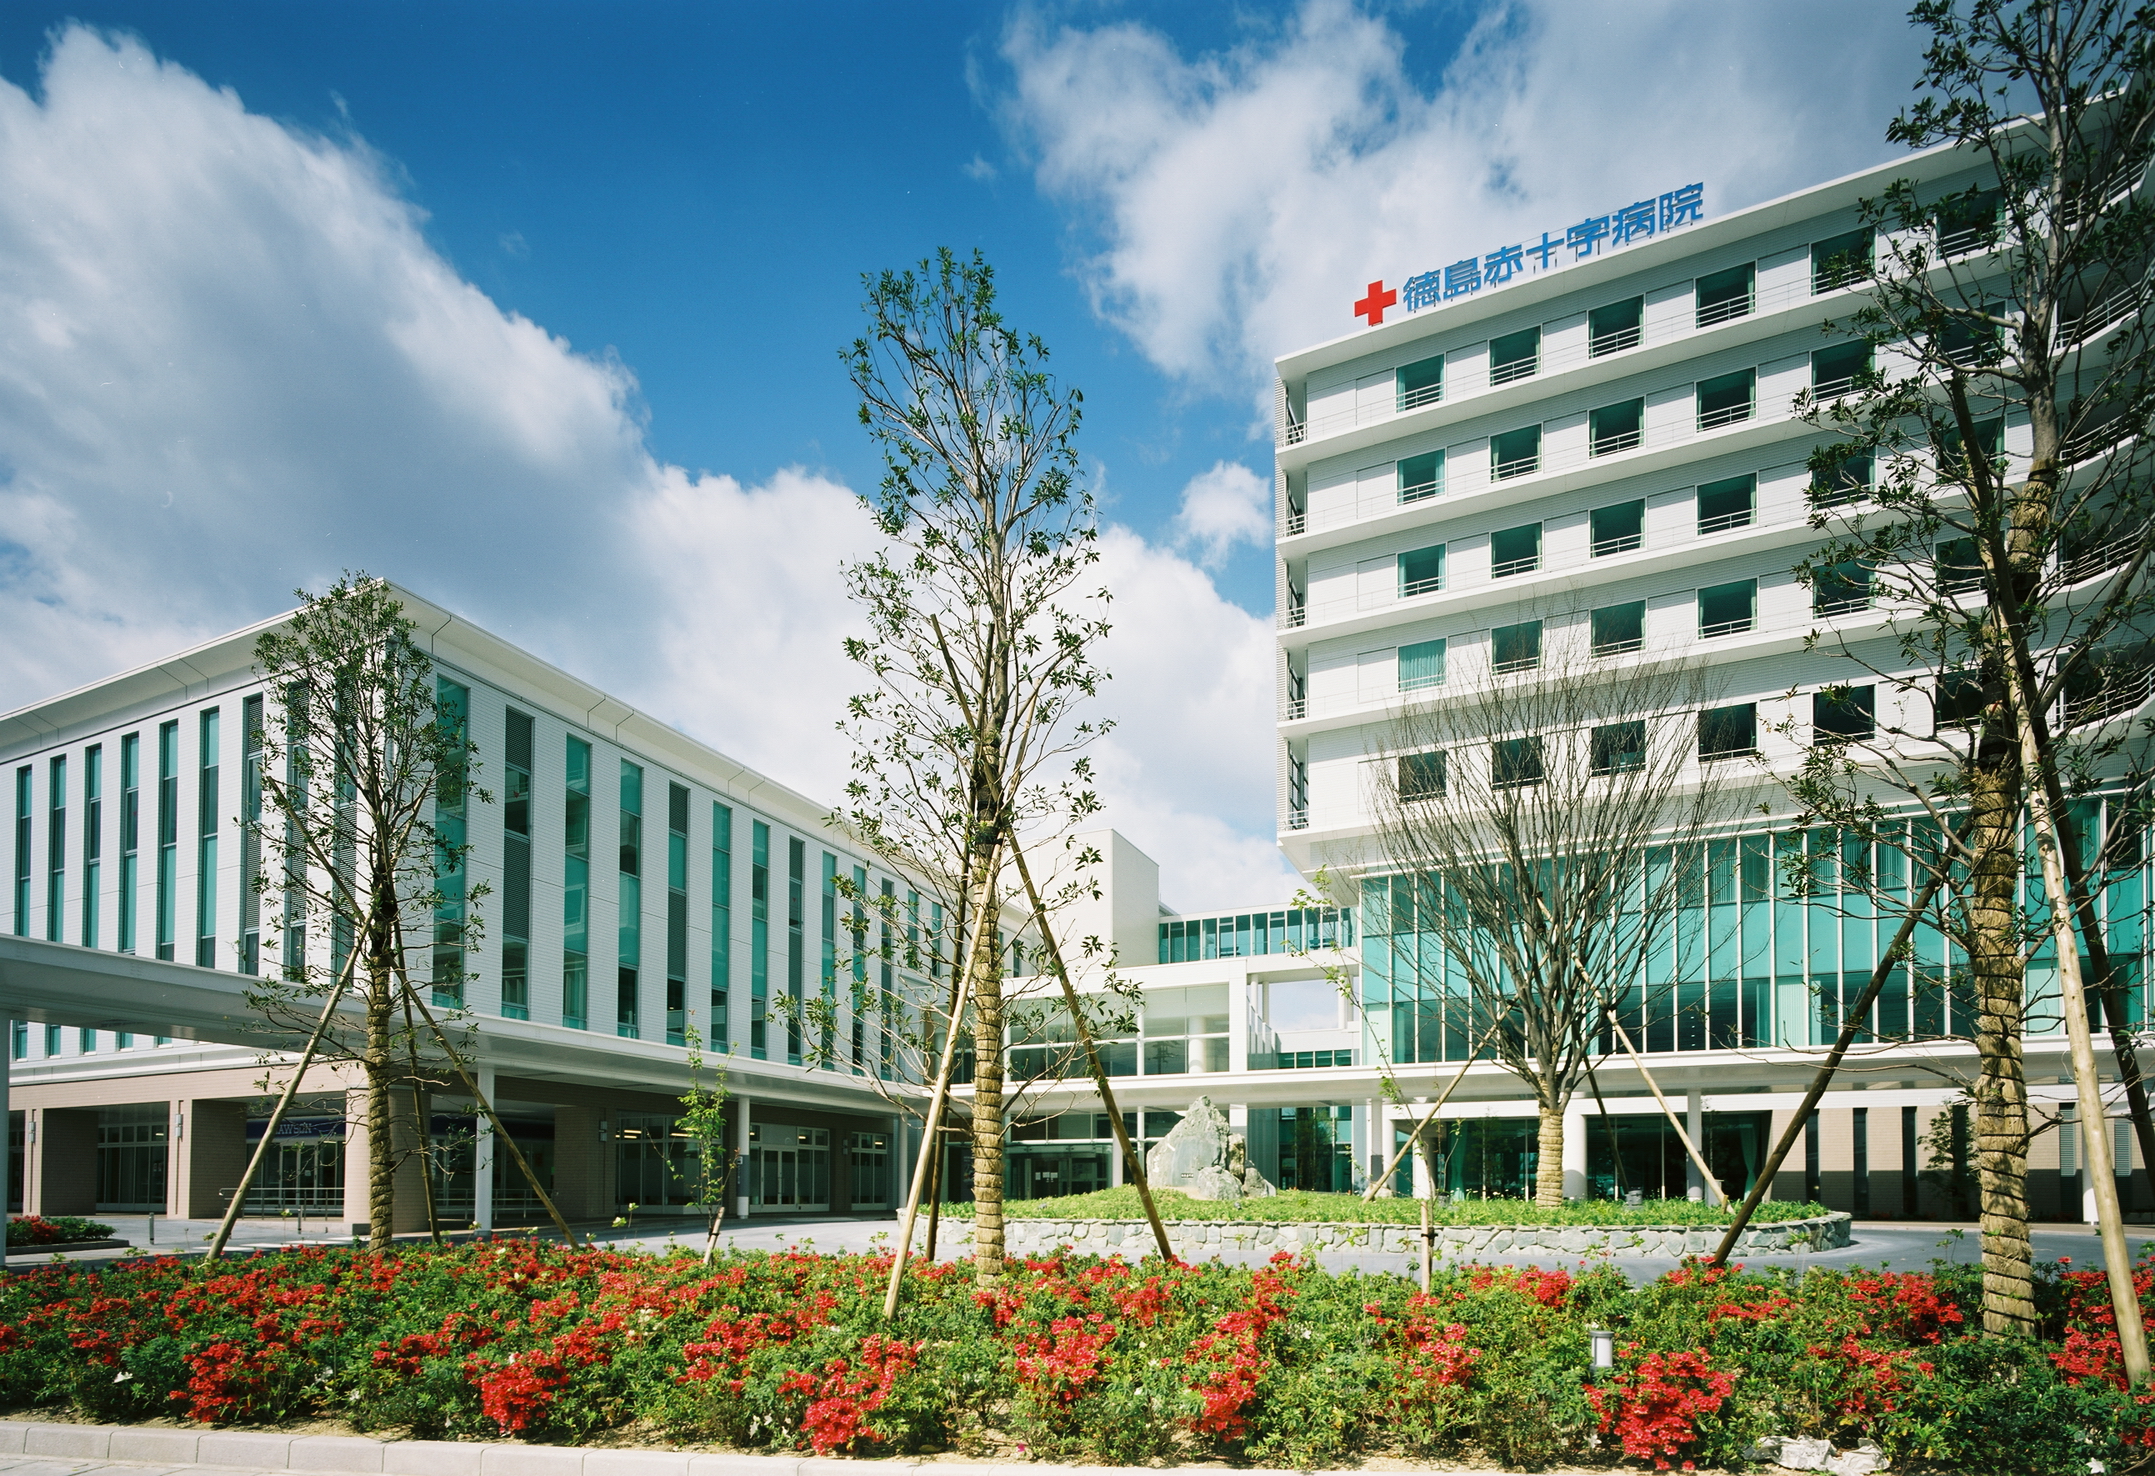 徳島赤十字病院